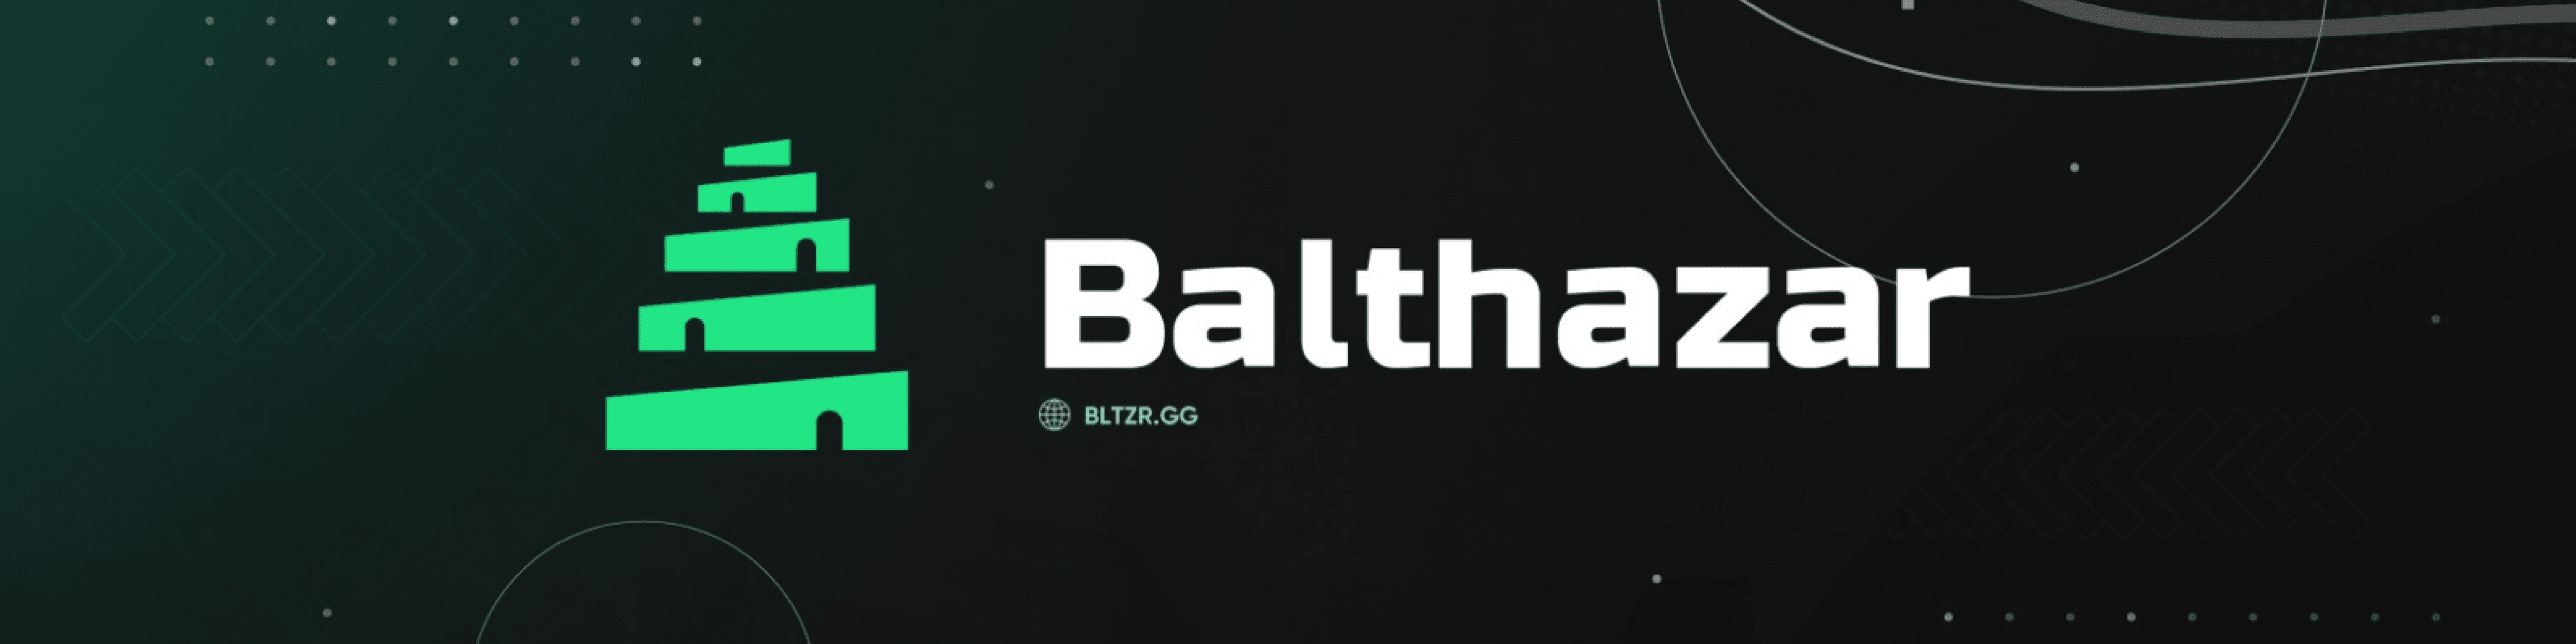 BalthazarDAO banner